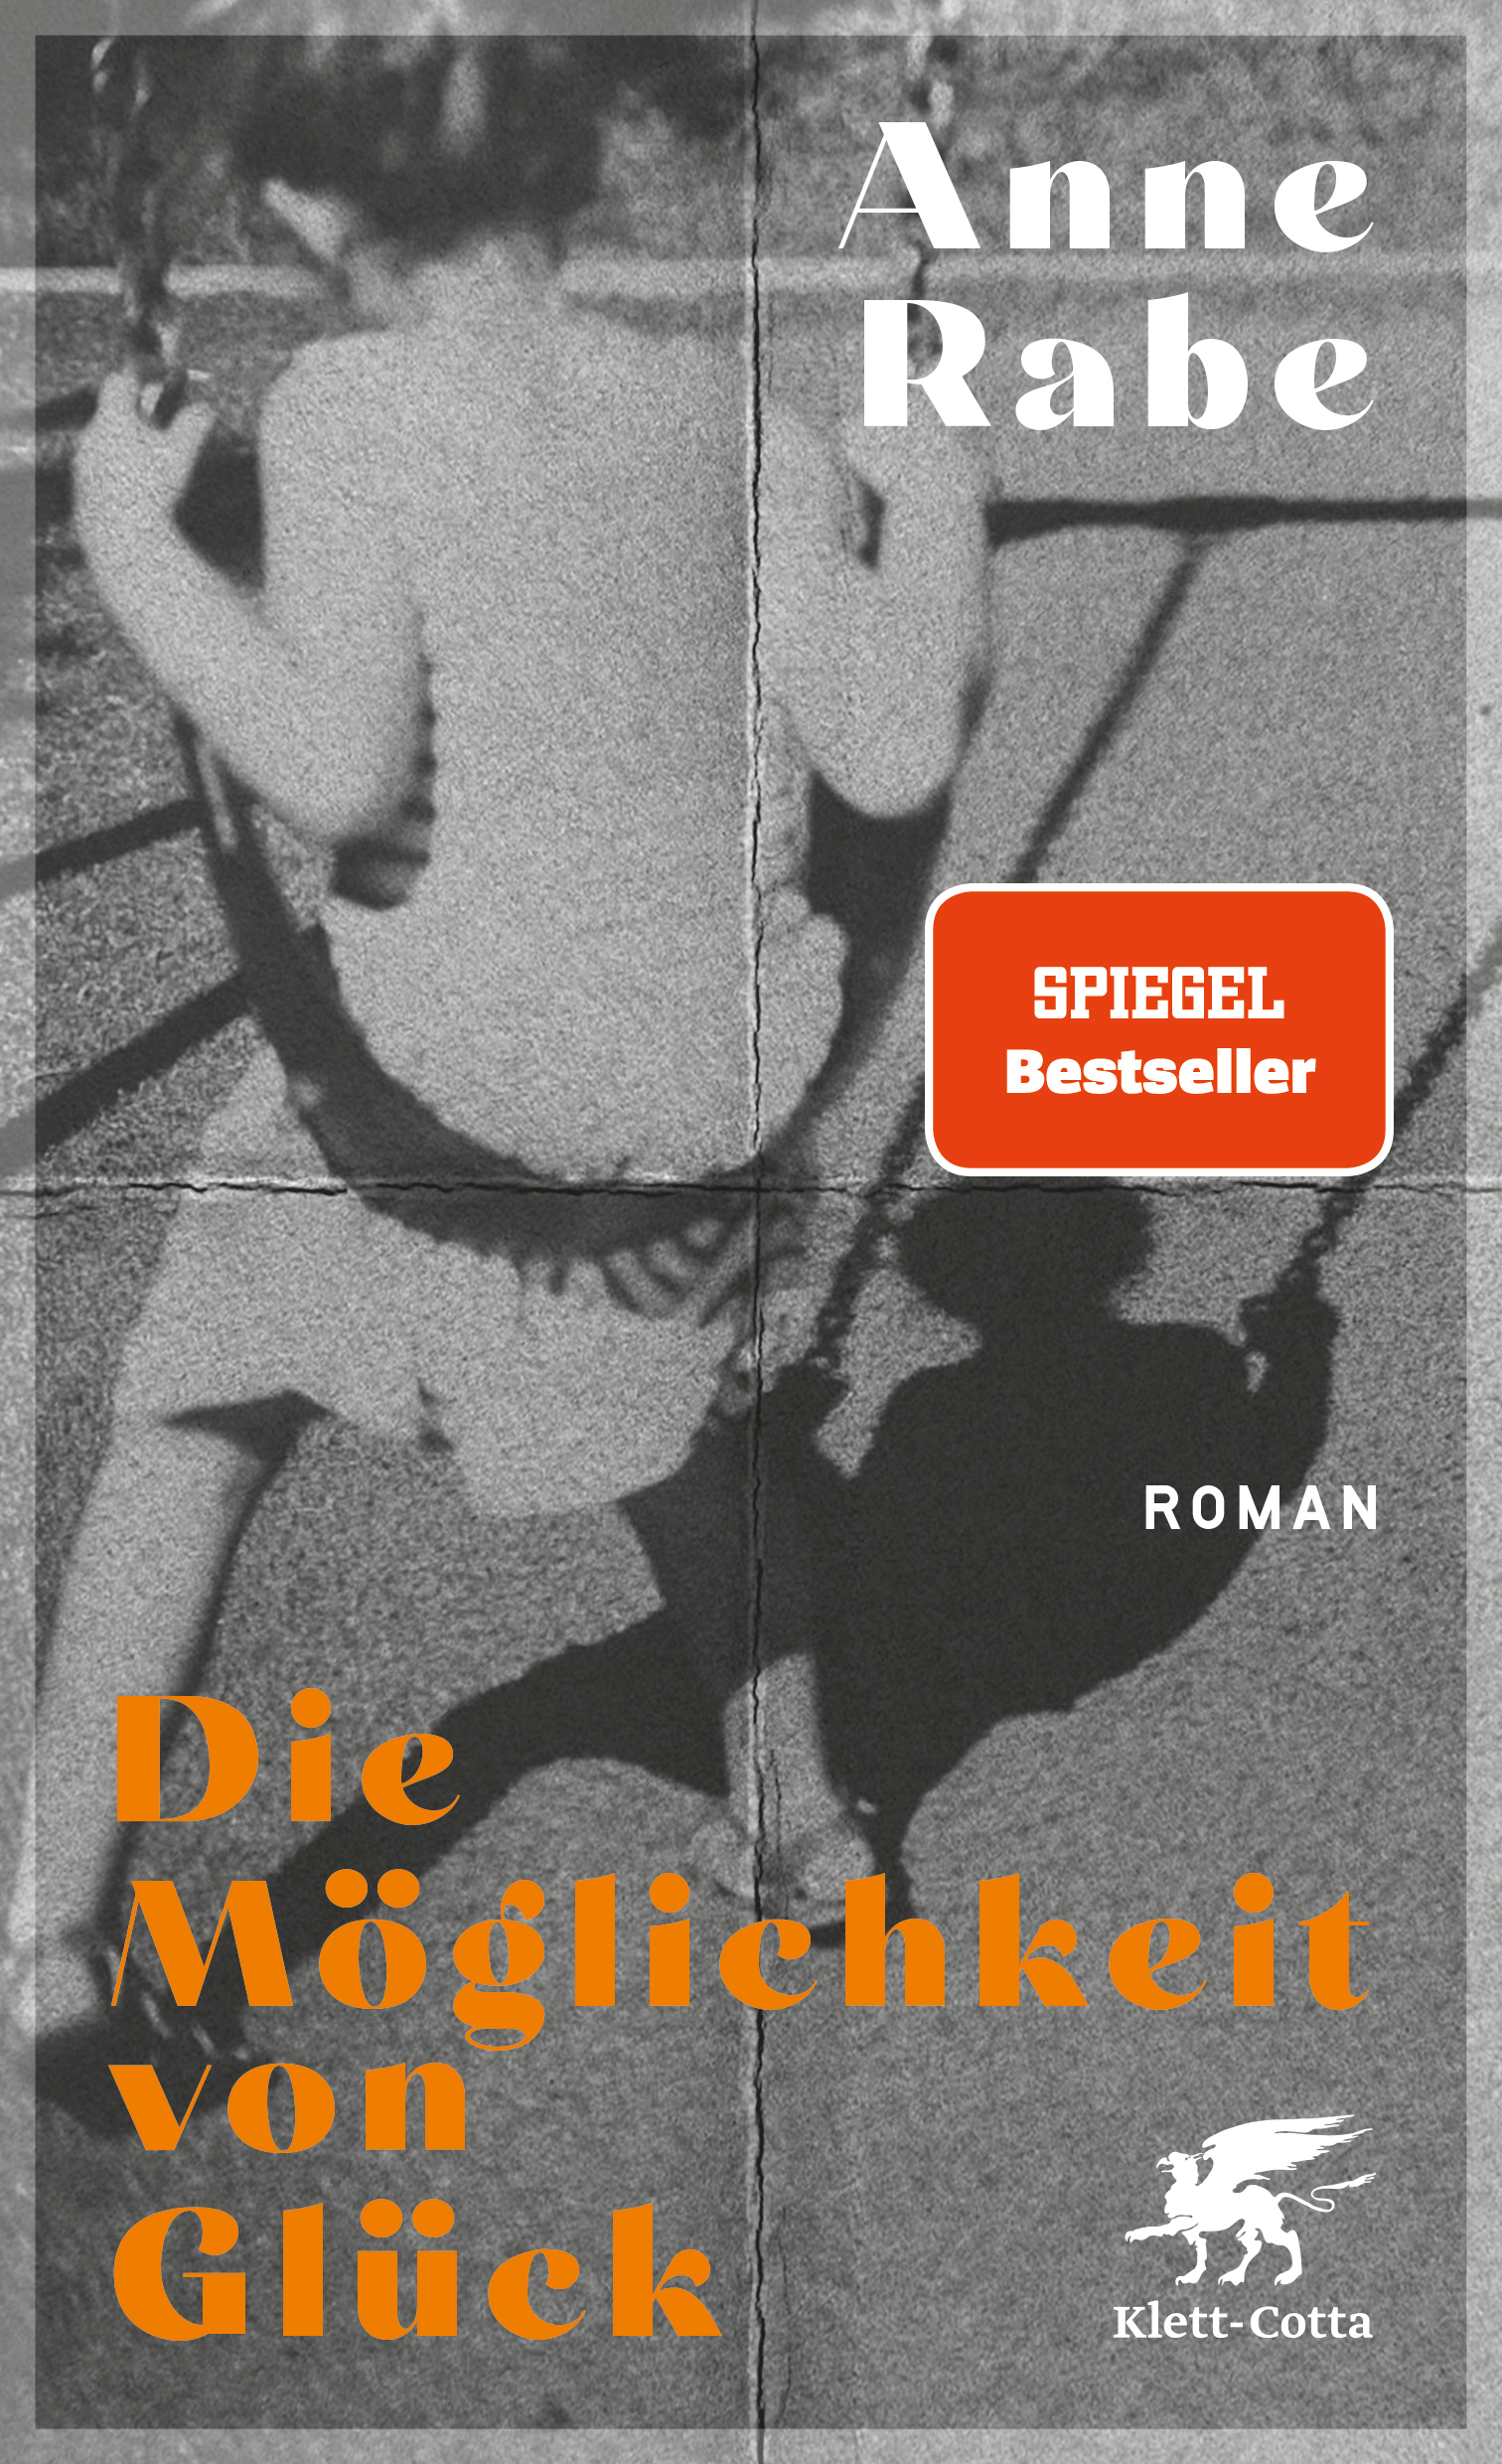 Anne Rabe: Die Möglichkeit von Glück (Hardcover, German language, Klett-Cotta)